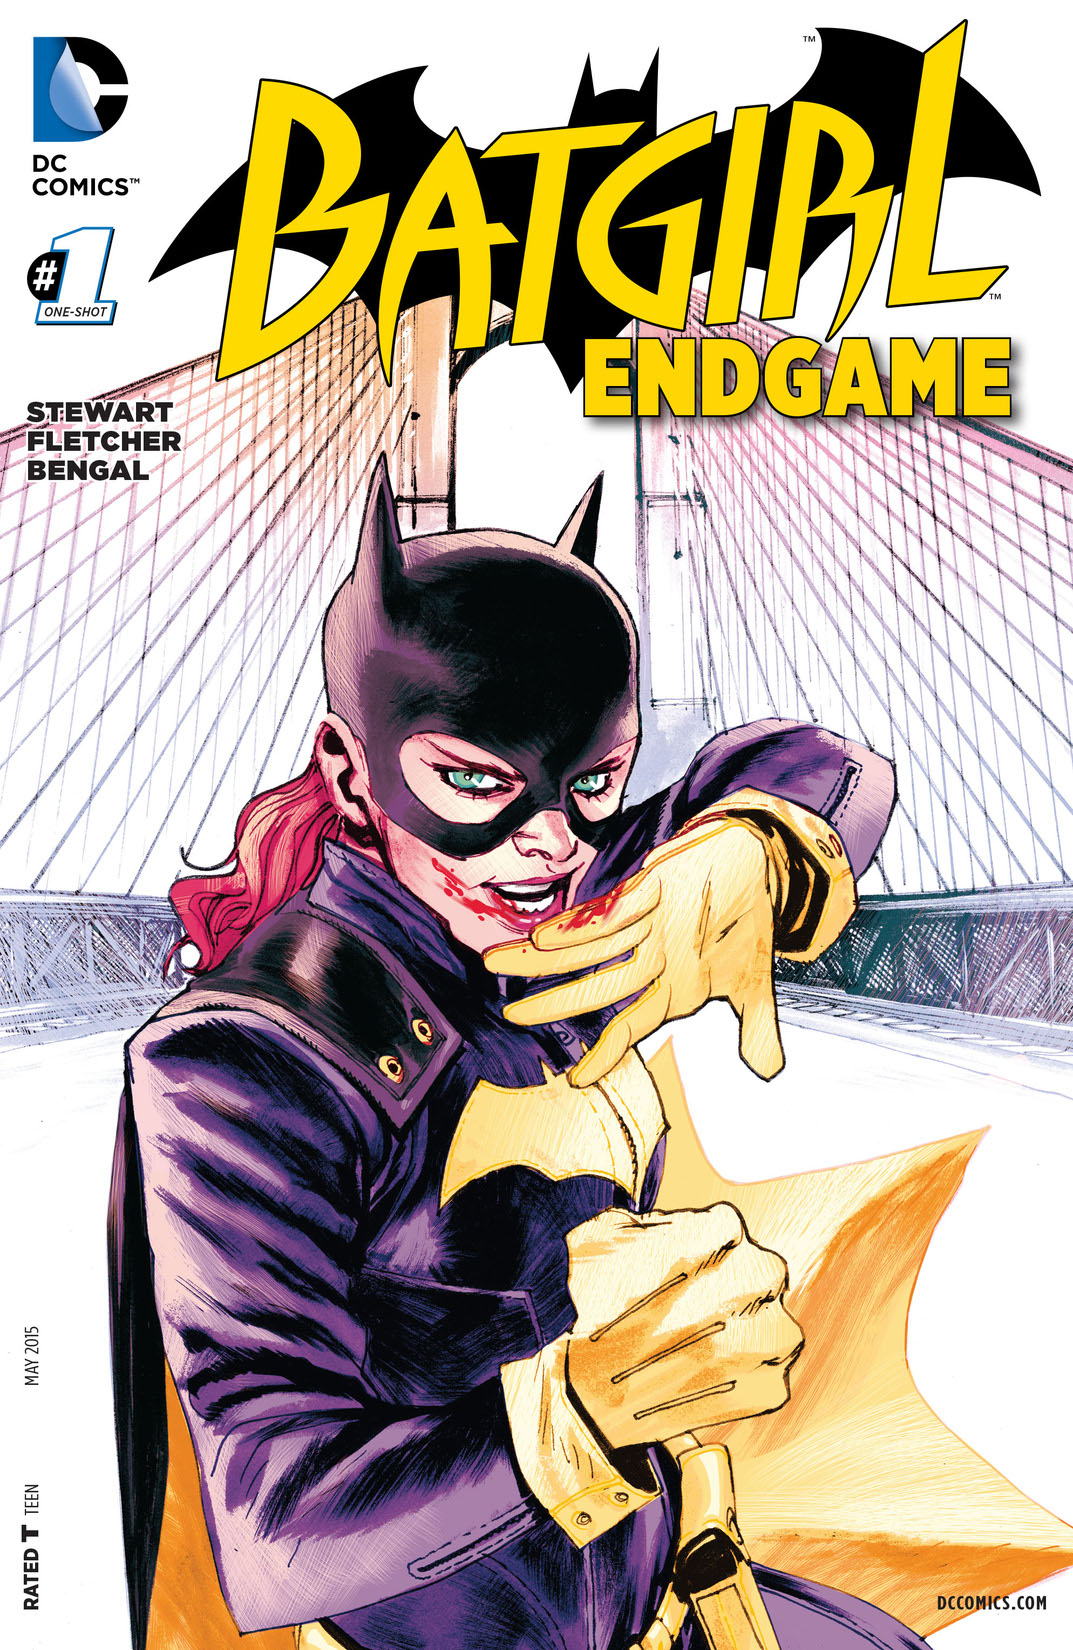 Batgirl: Endgame (2015-) #1 preview images